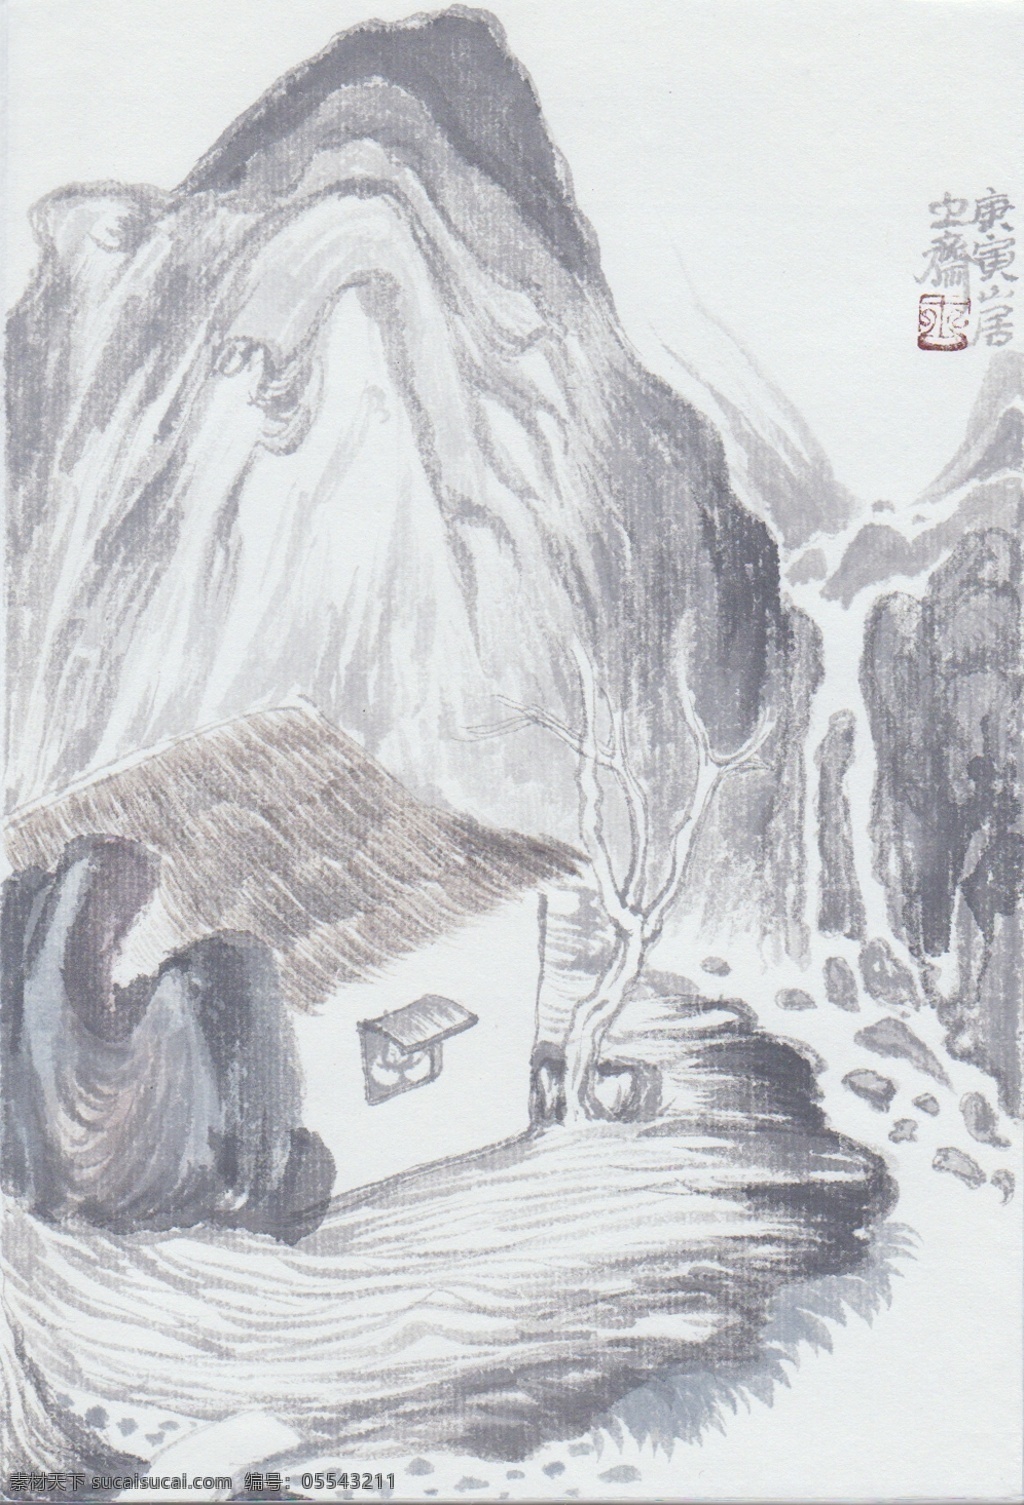 2010 年 尤 思 成 国画作品 山水画 中国画 设计素材 山水画篇 中国画篇 书画美术 白色